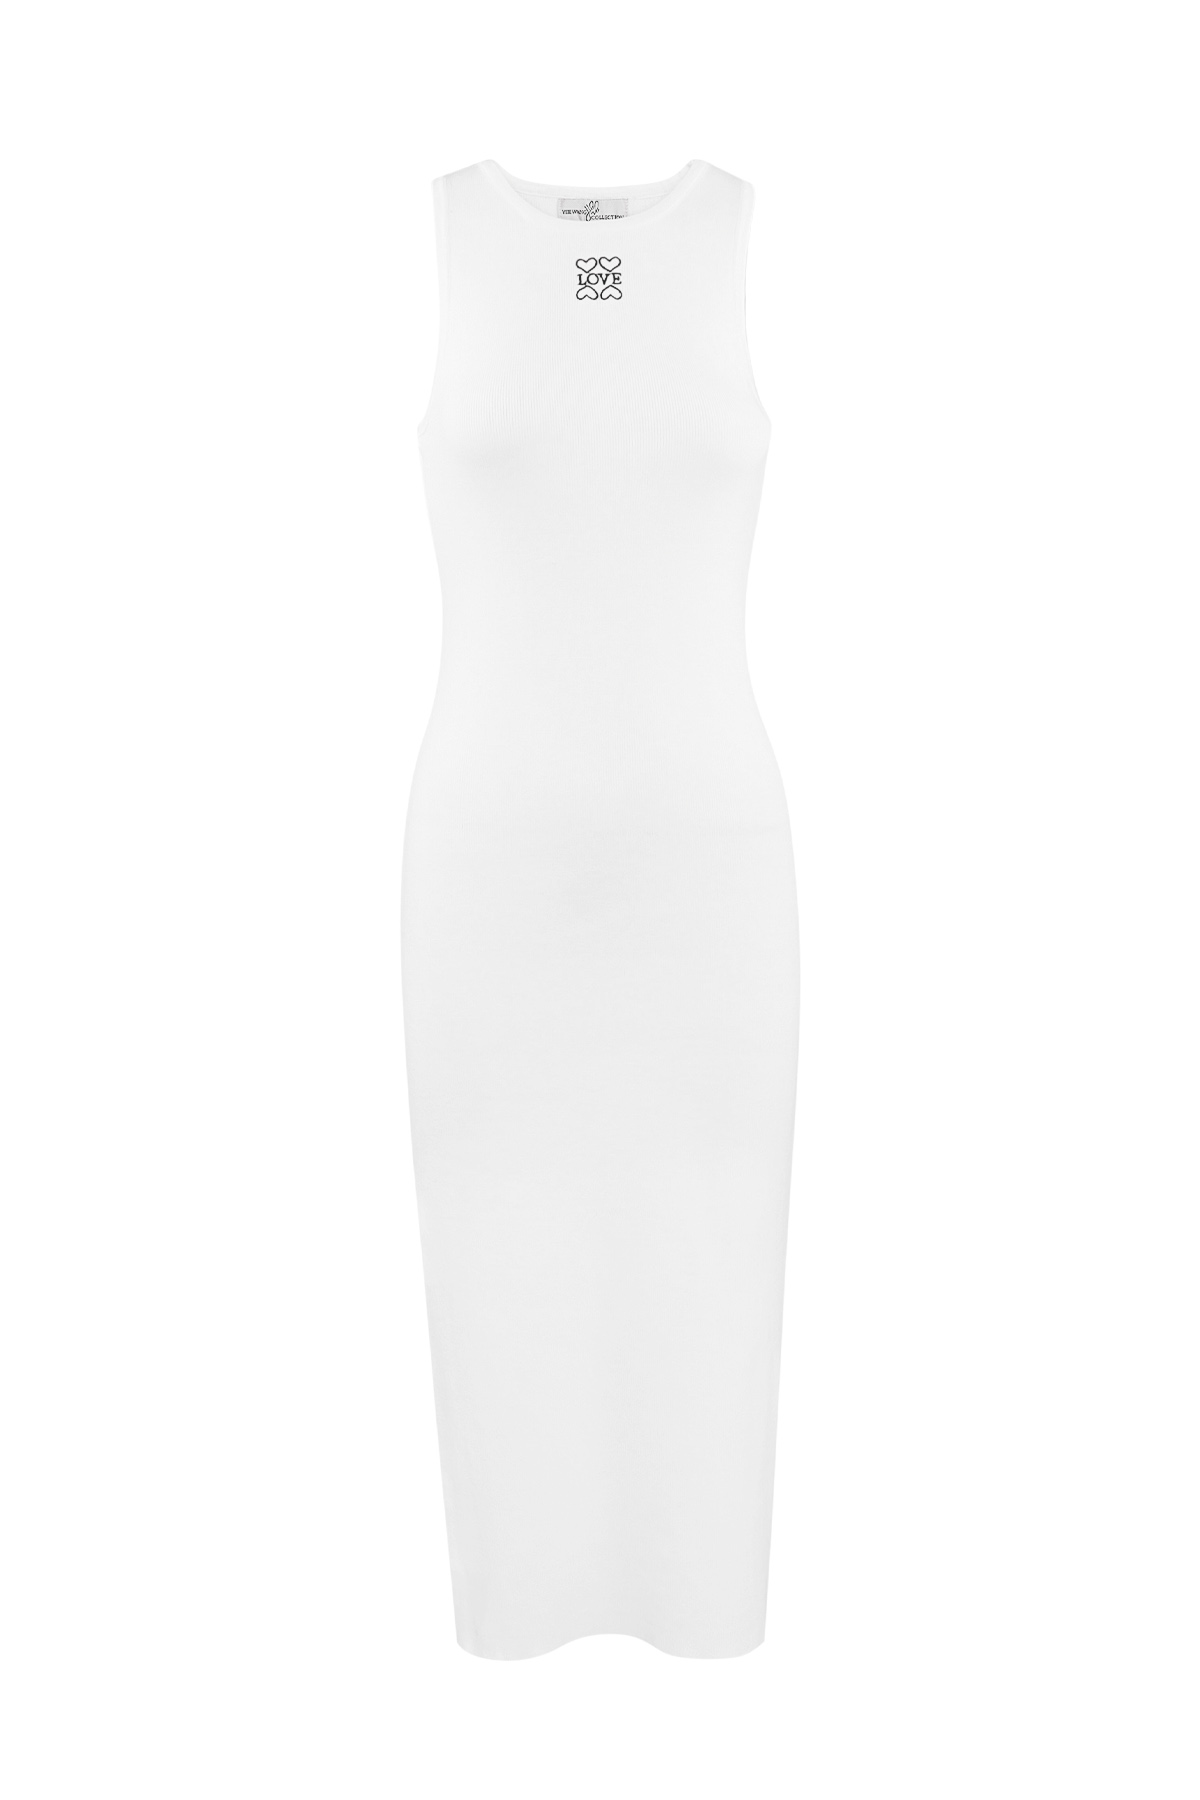 Lange gebreide jurk love - wit h5 